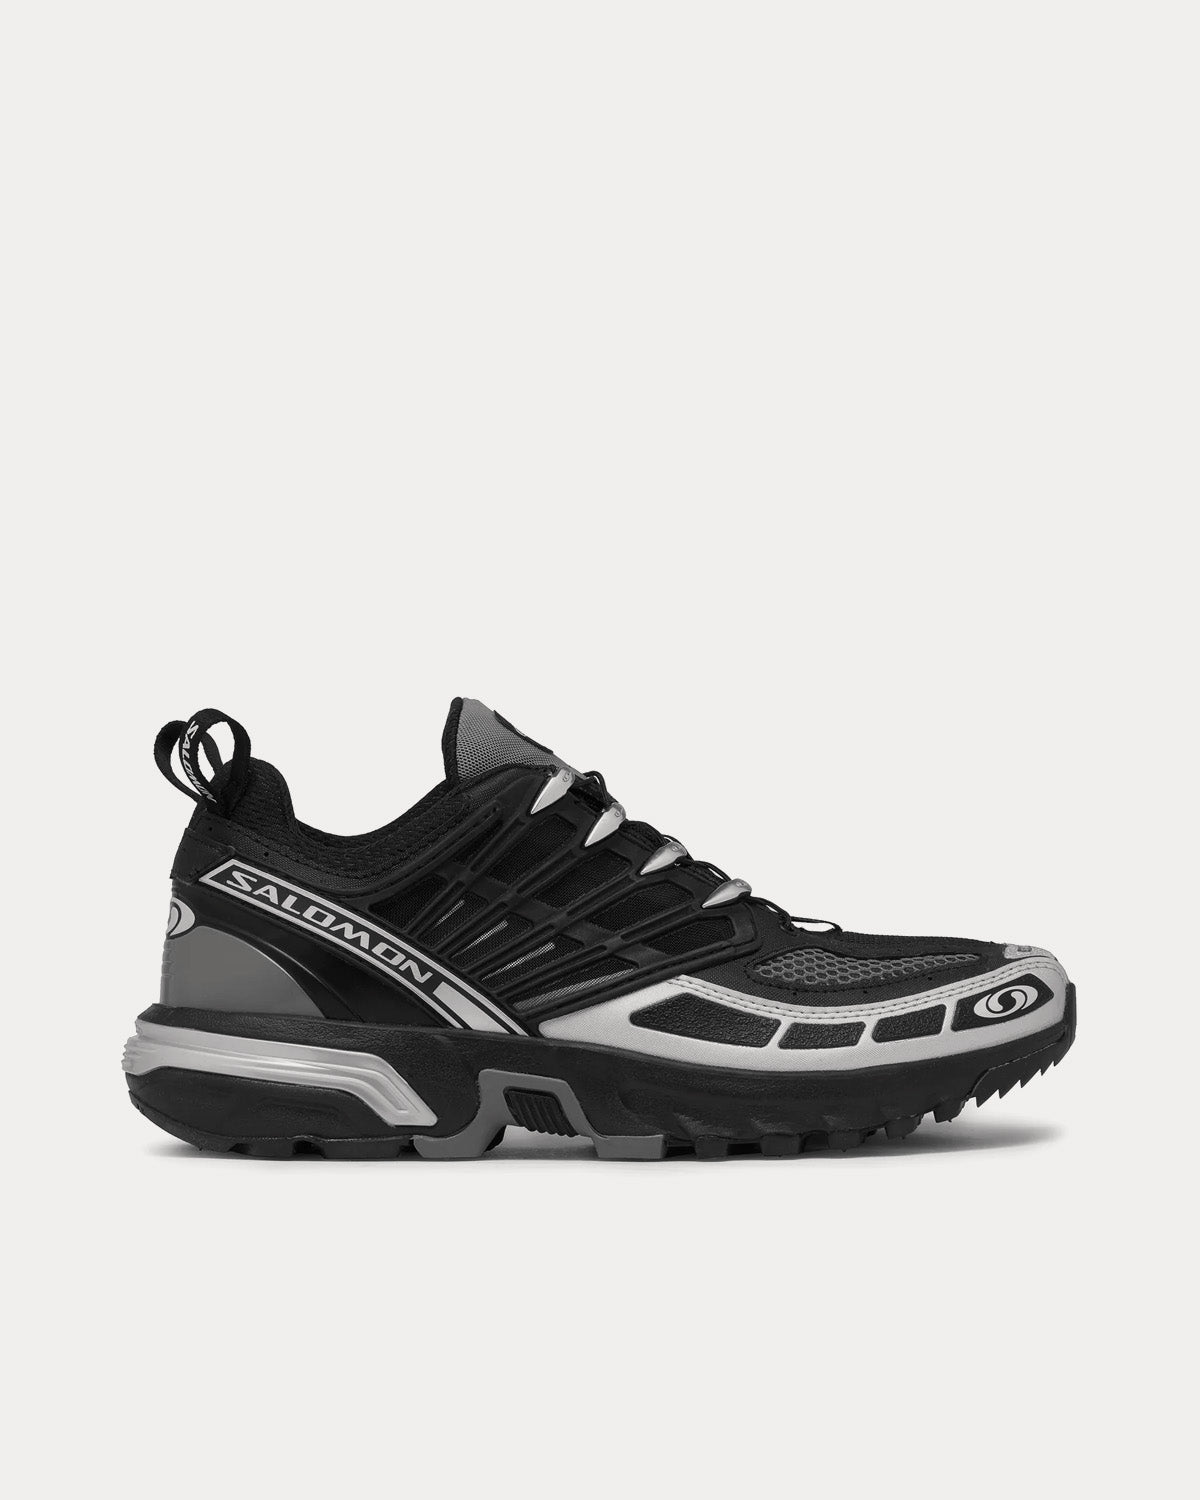 Salomon x DSM - ACS Pro Black / Silver Low Top Sneakers